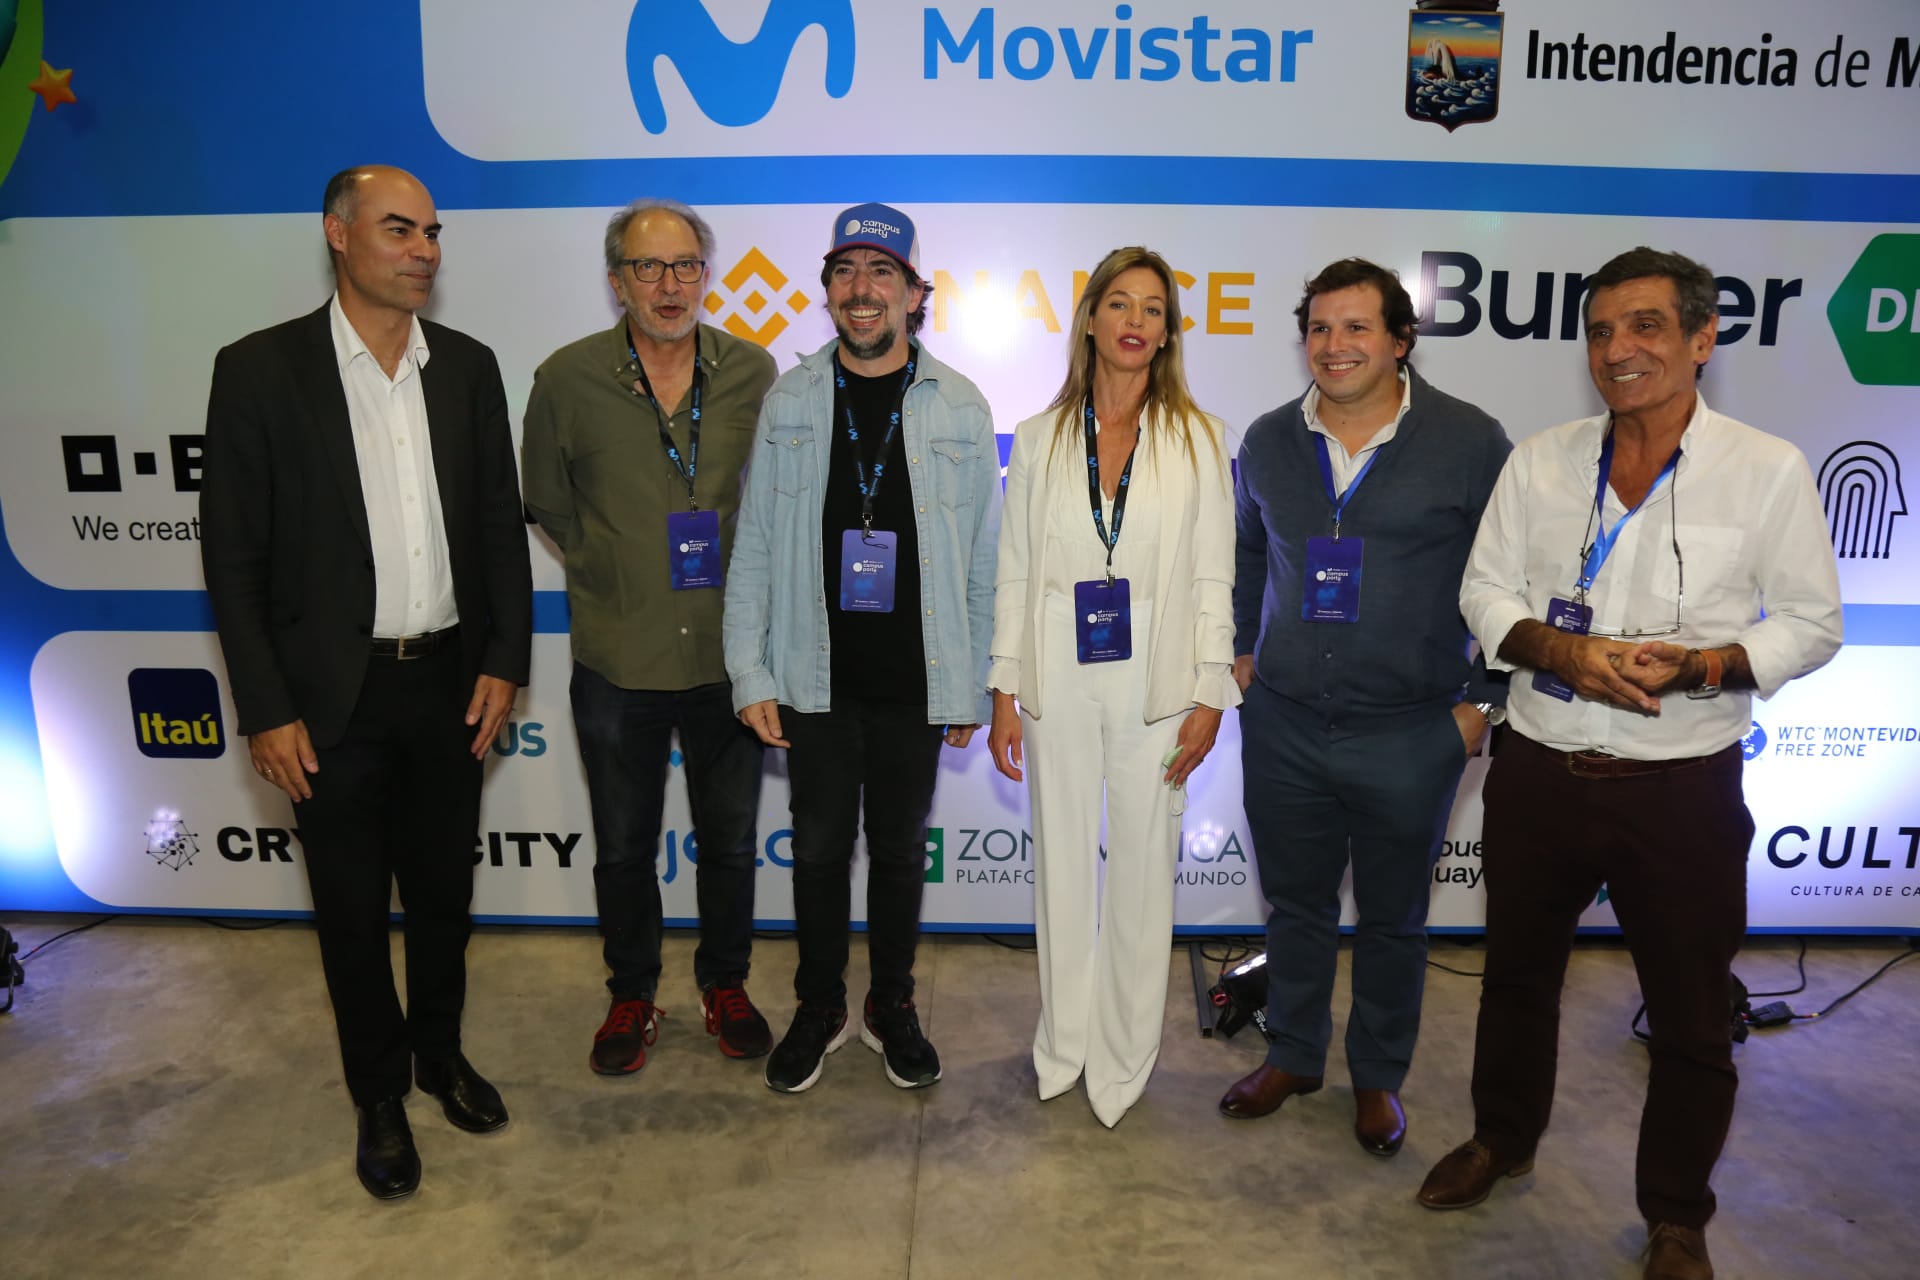 Varios funcionarios de Uruguay recorrieron el Campus Party y destacaron el gran interés que la tecnología genera en los jóvenes